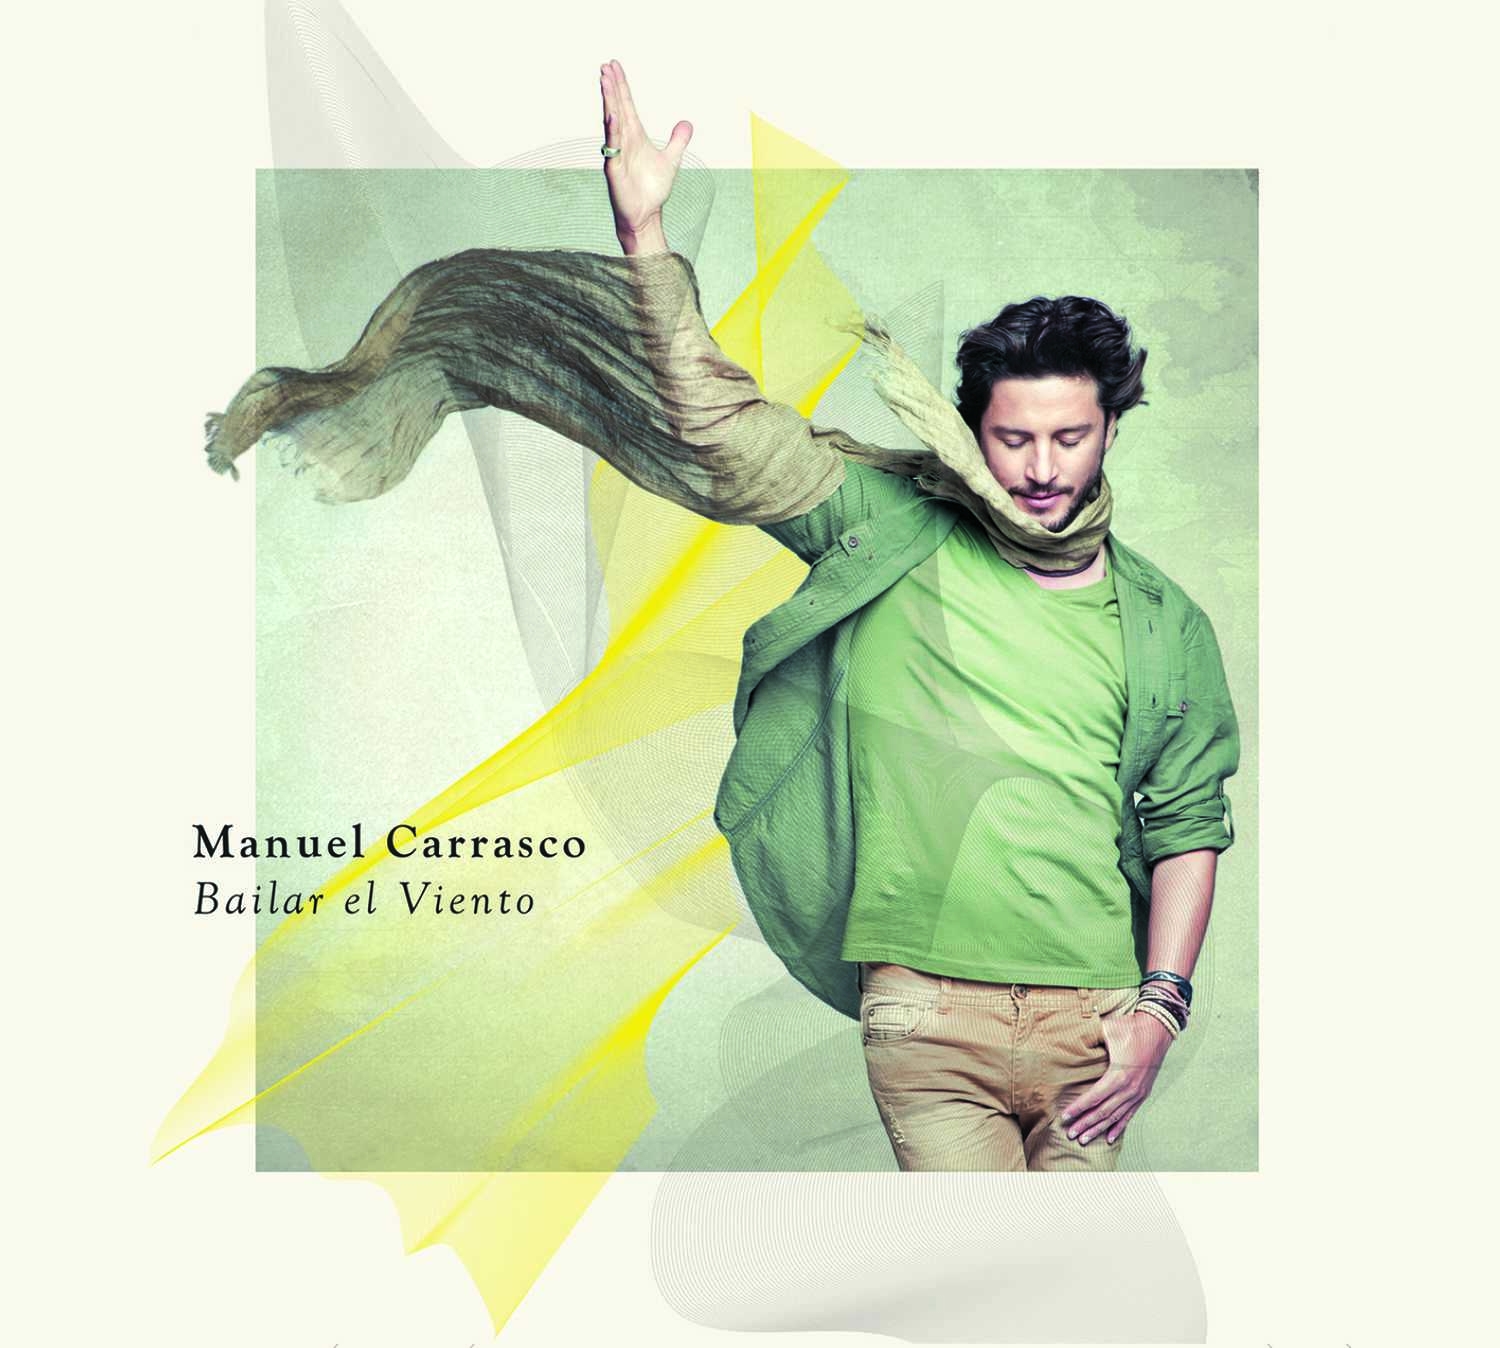 Manuel Carrasco éxito arrasador con "Bailar El Viento", su nuevo álbum.